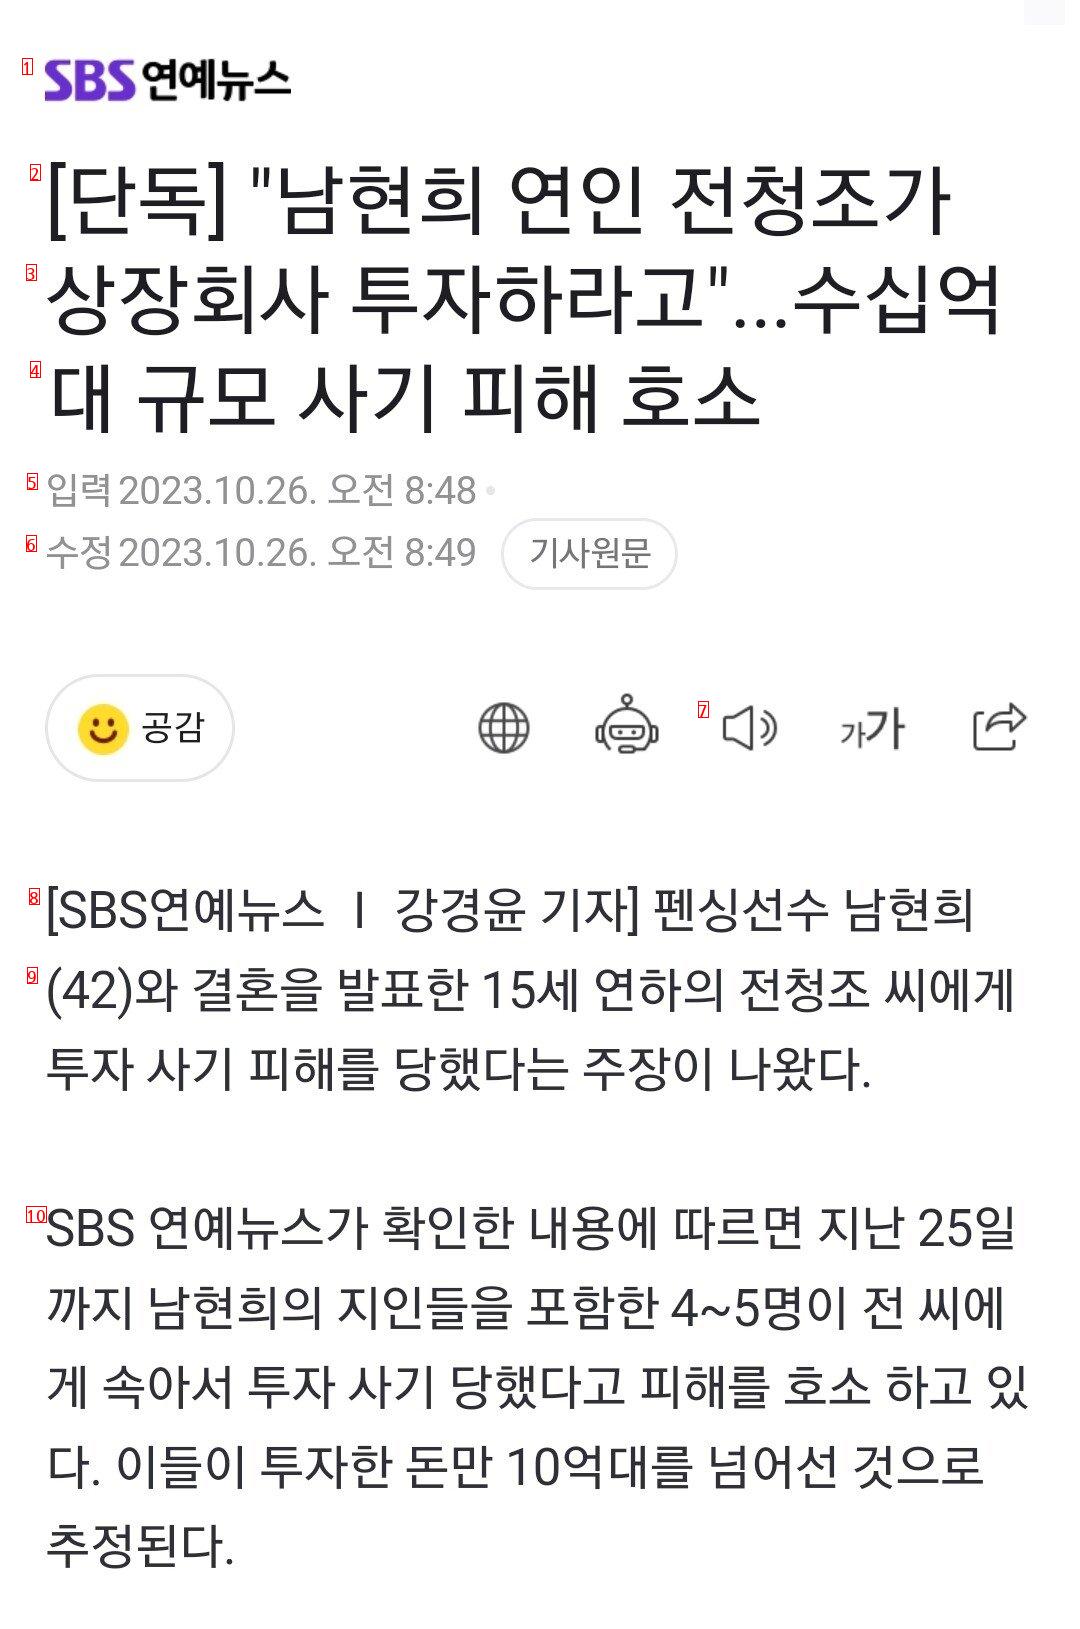 [단독] """"남현희 연인 전청조가 상장회사 투자하라고""""...수십억대 규모 사기 피해 ㄷㄷㄷ